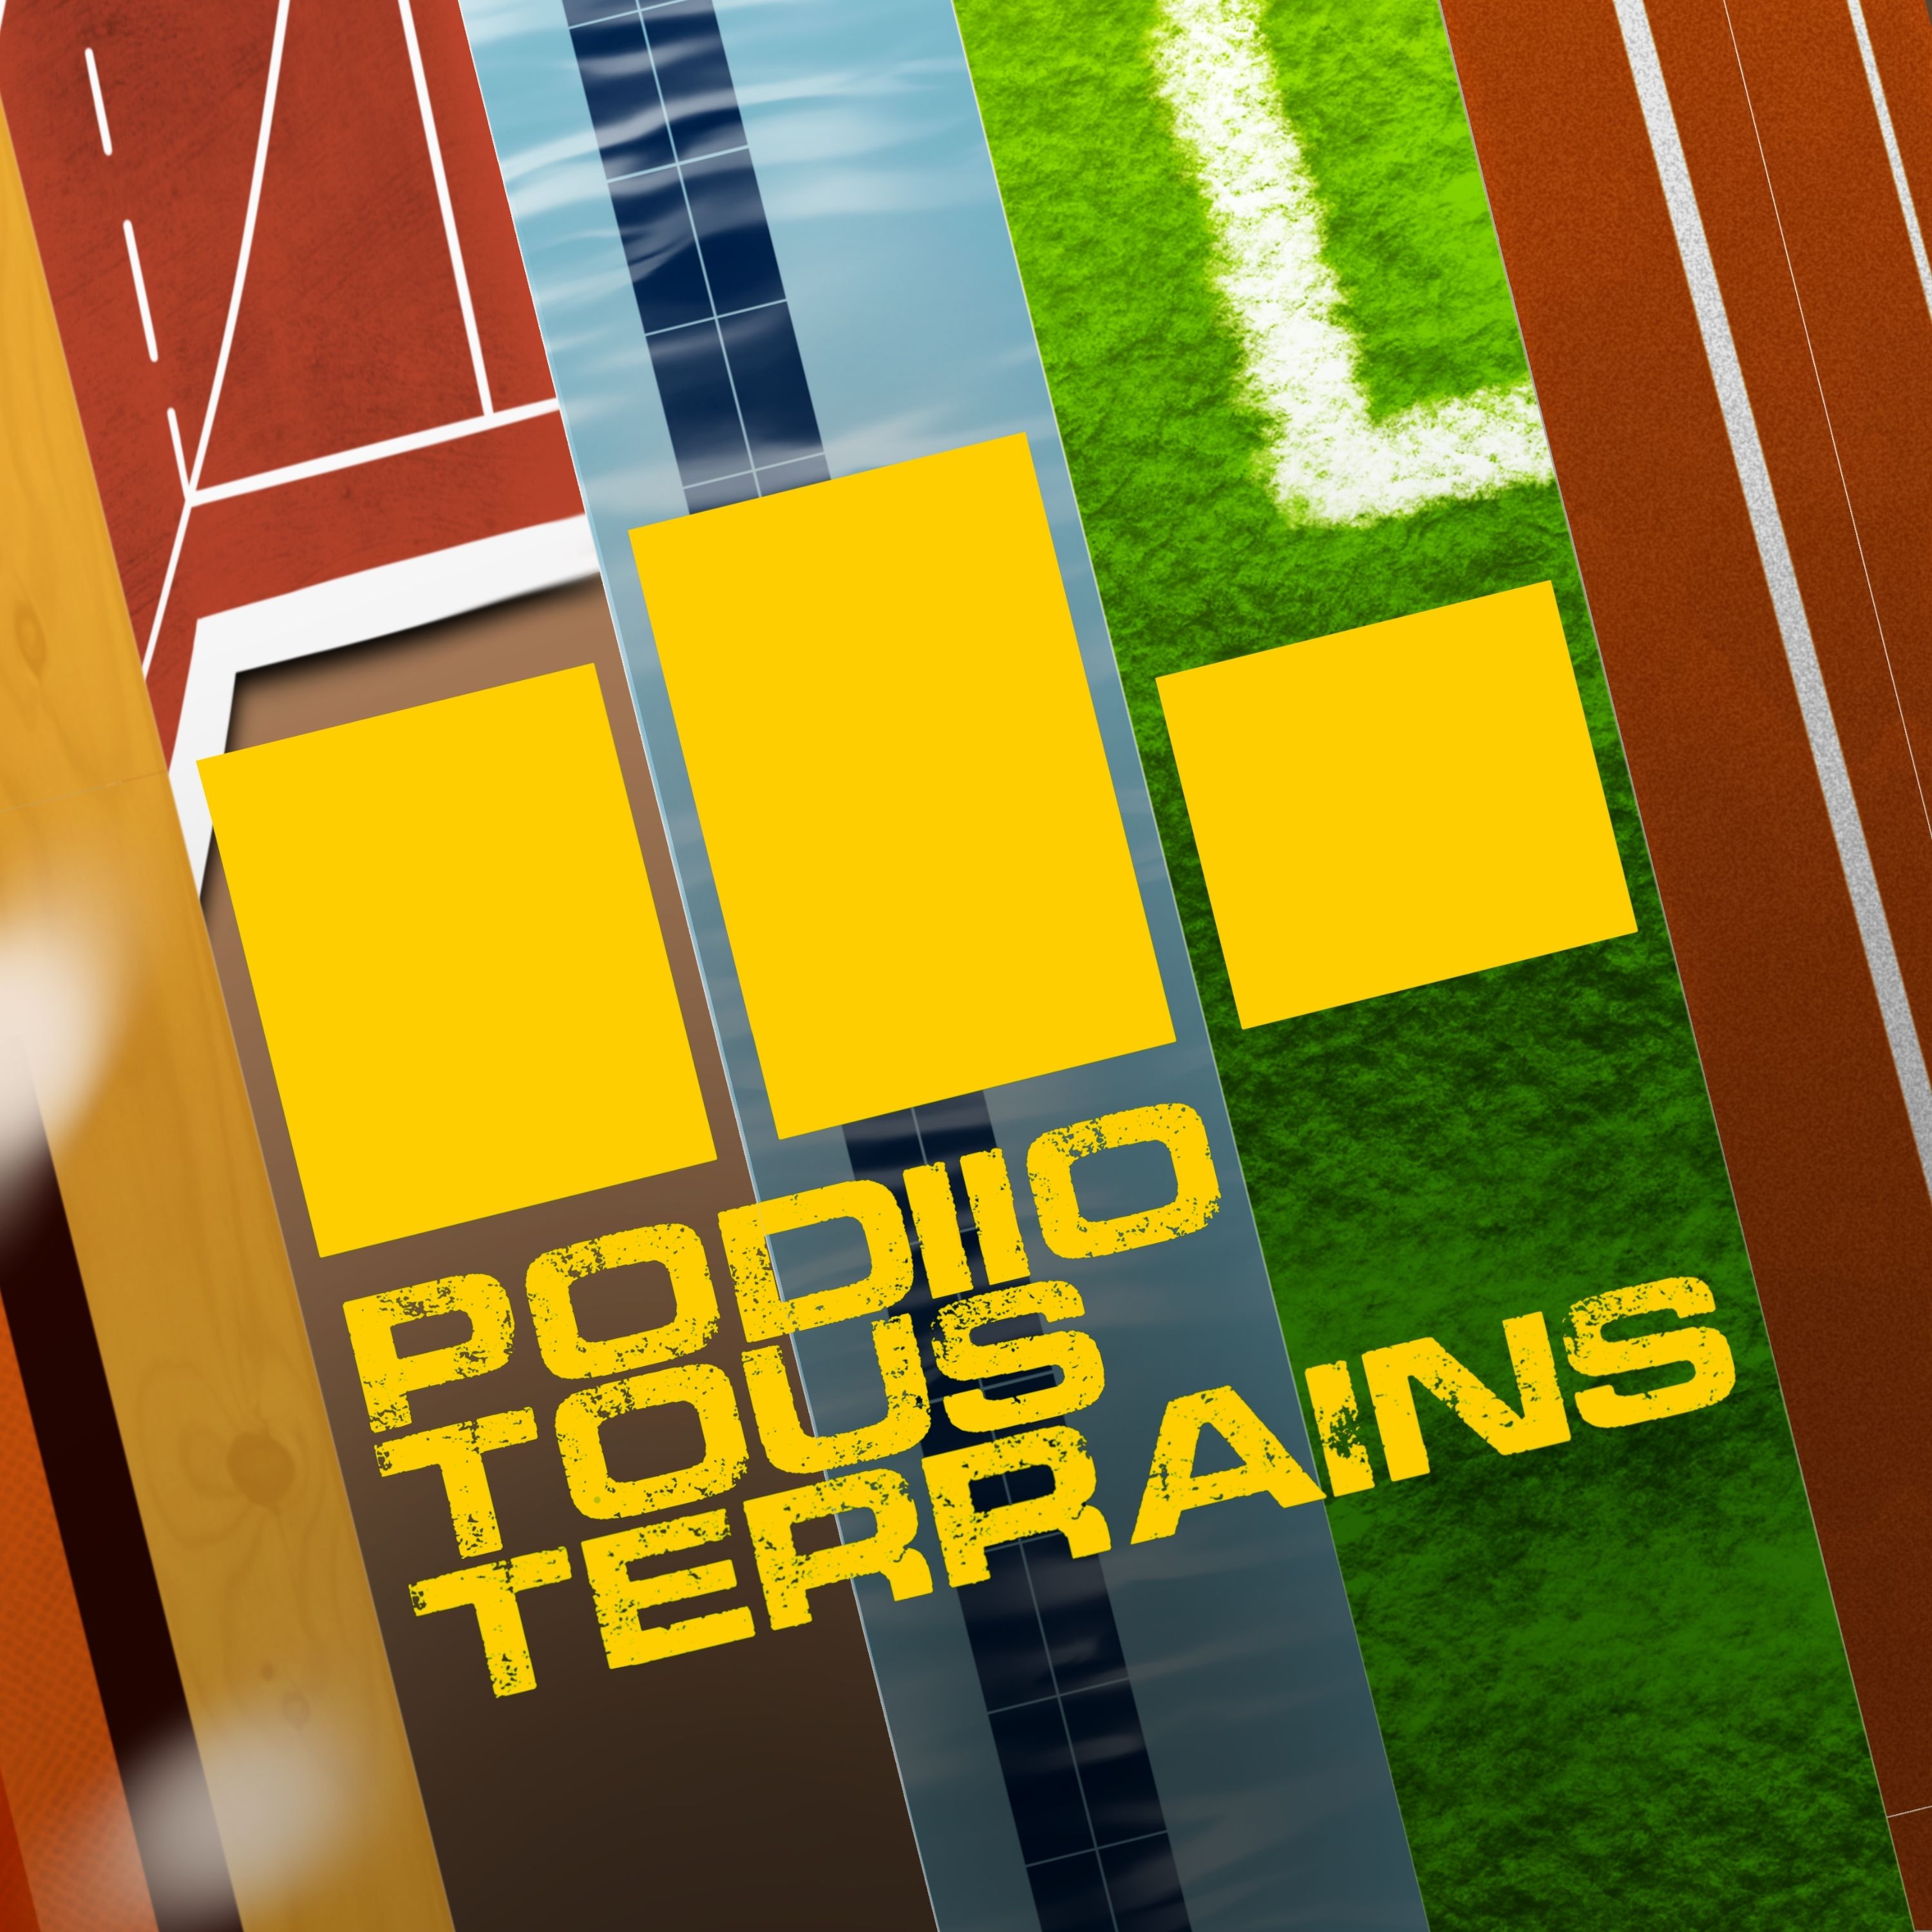 Logo du podcast "Podiio Tous Terrains"